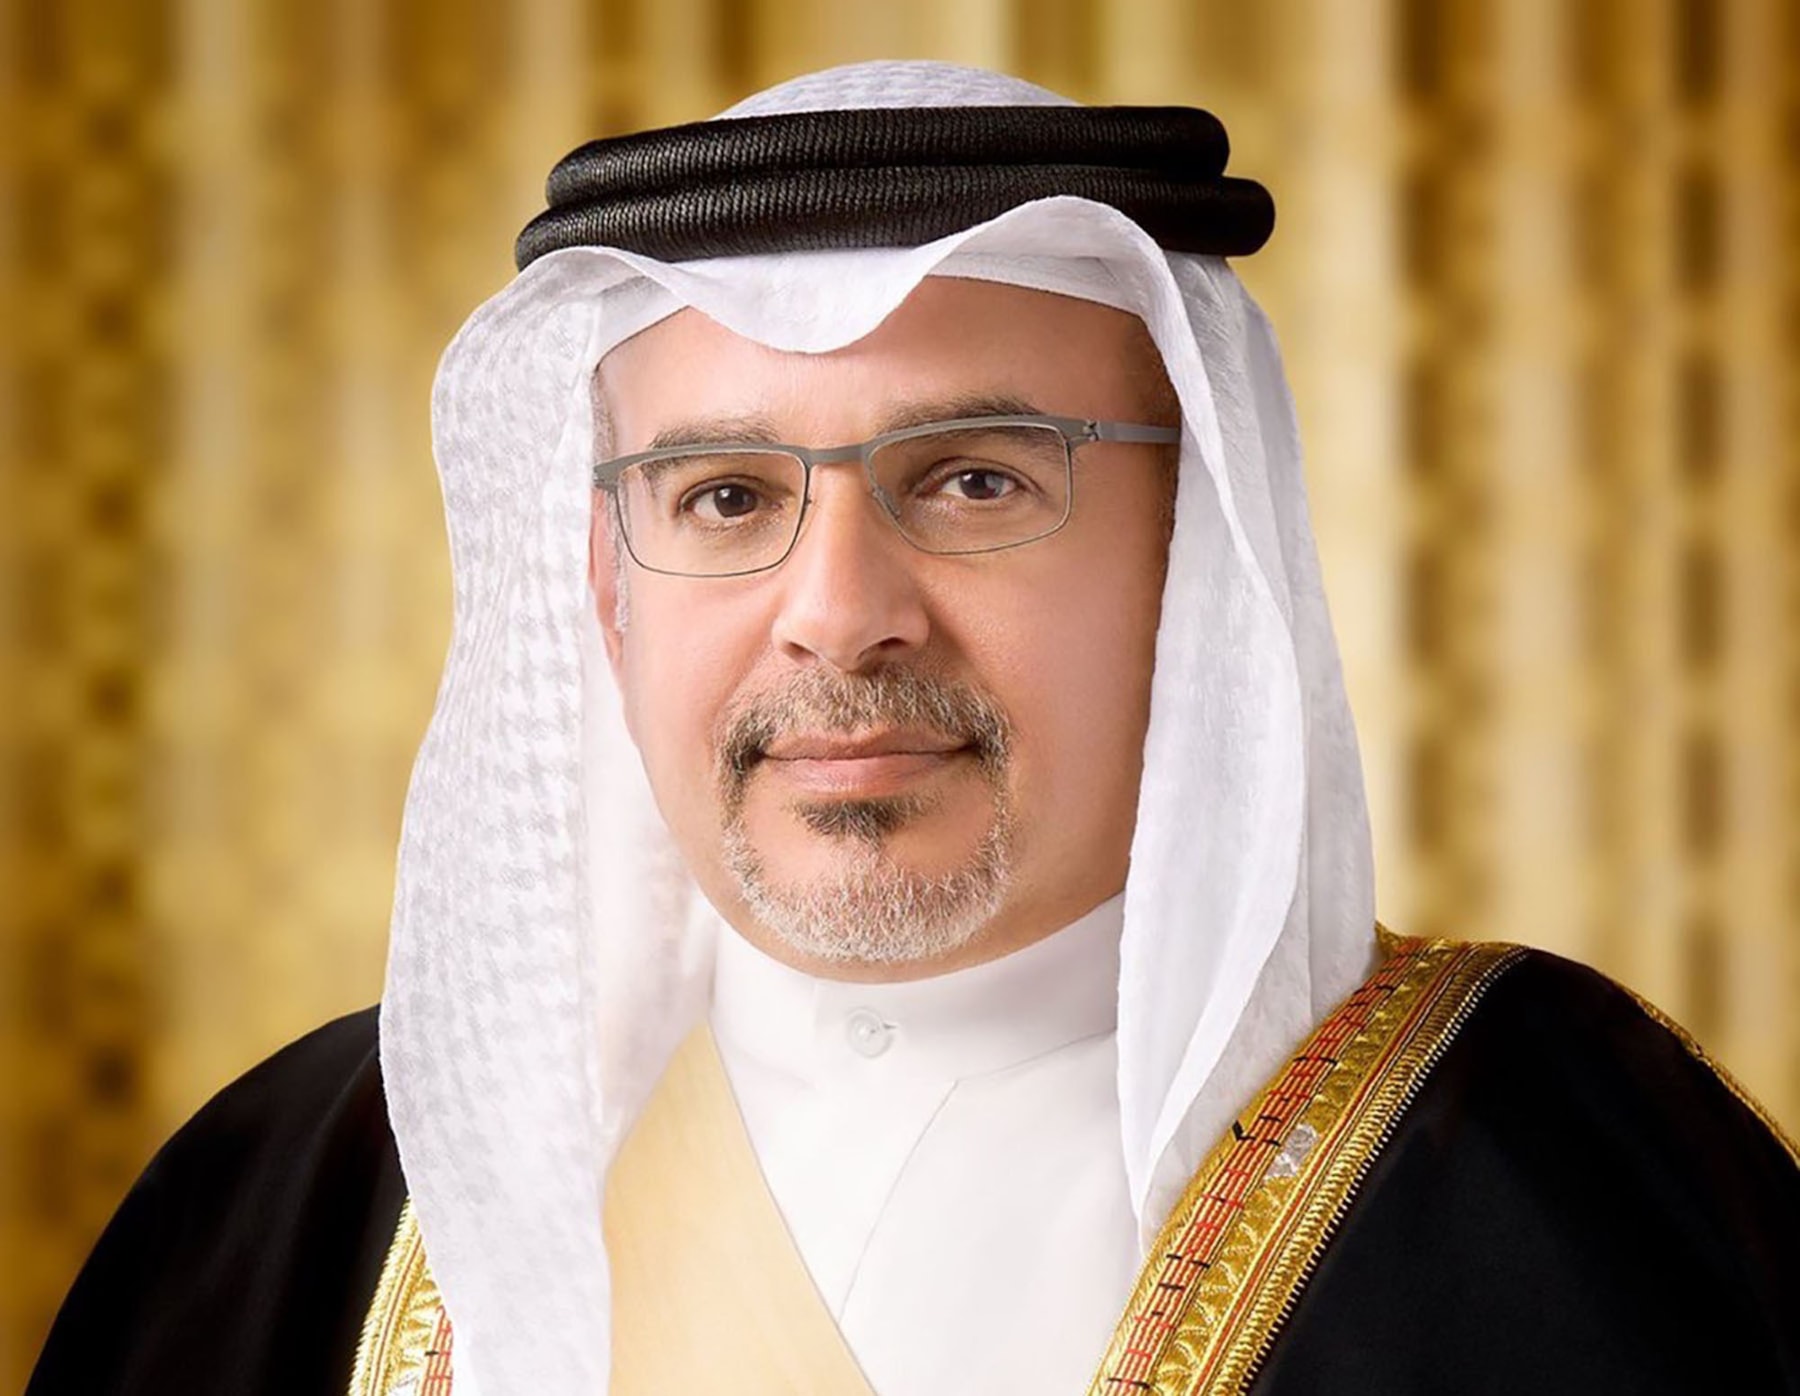 صاحب السمو الملكي الأمير سلمان بن حمد آل خليفة ولي العهد رئيس مجلس الوزراء